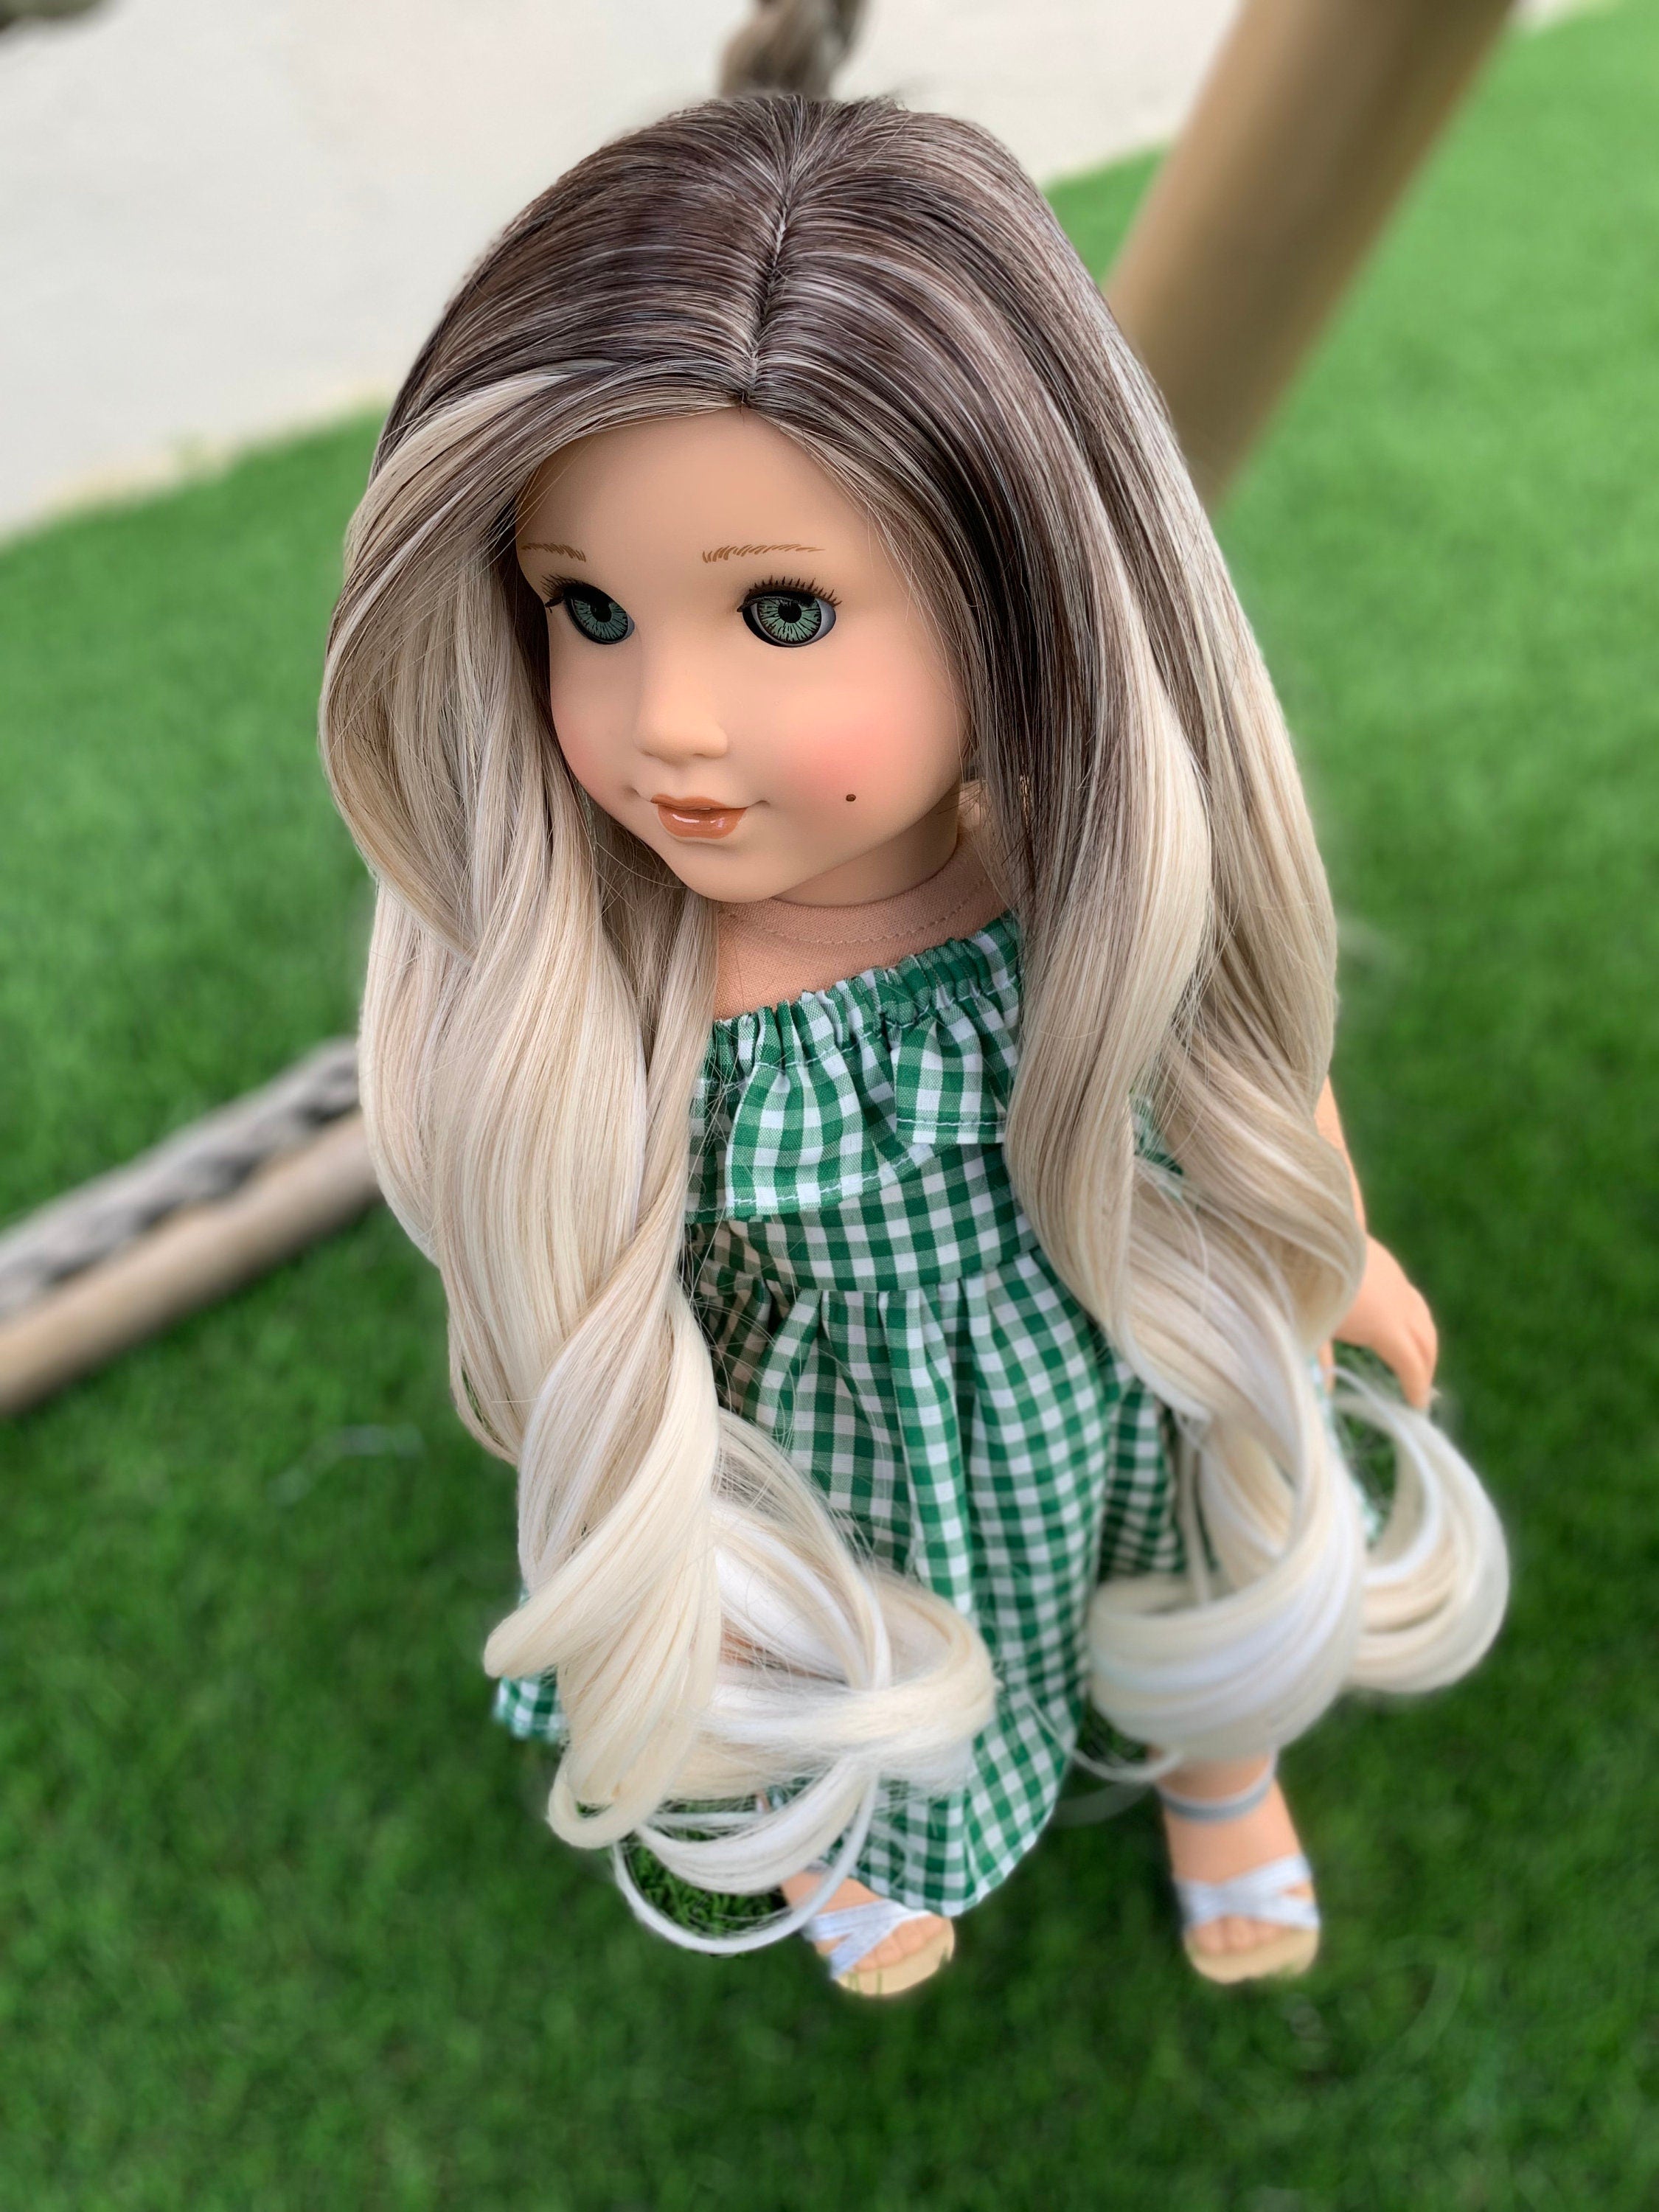 Custom doll wig for 18" American Girl Dolls - Heat Safe - Tangle Resistant - fits 10-11" head size of 18" dolls OG Blythe BJD Gotz Ombre